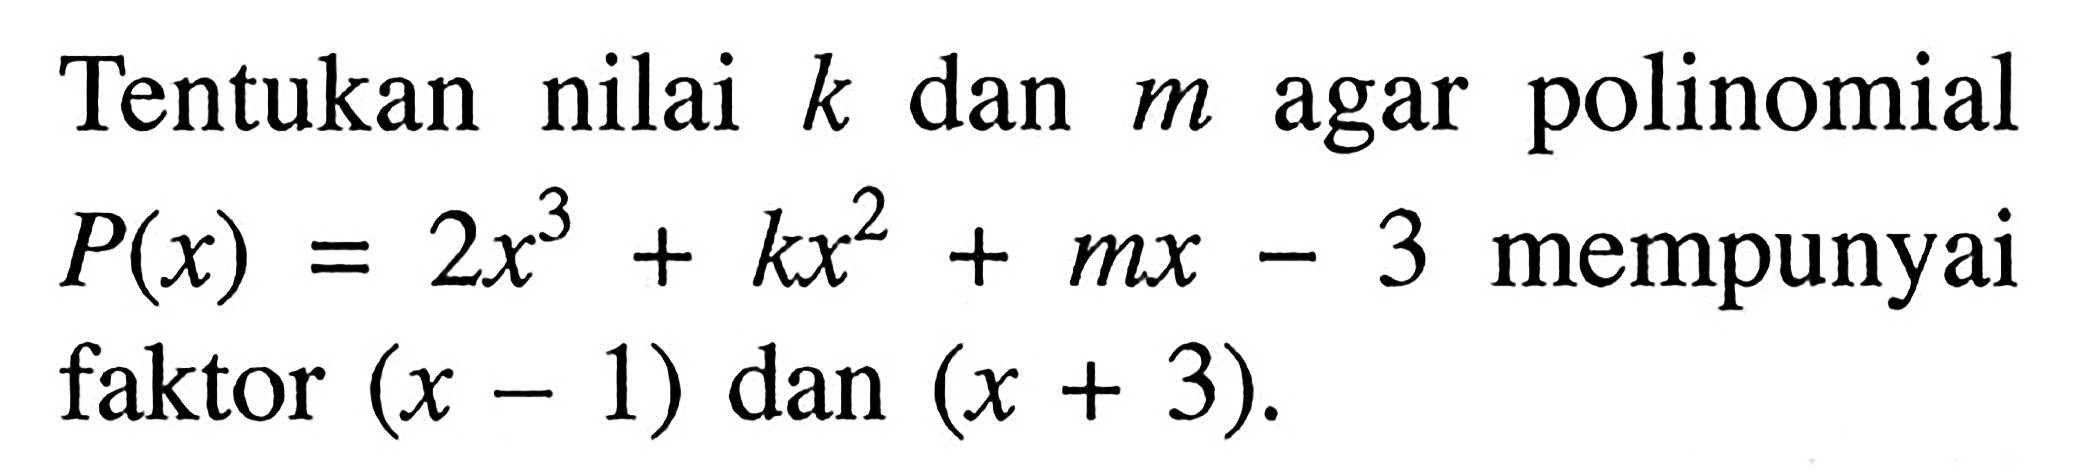 Tentukan nilai k dan m agar polinomial P(x)=2x^3+kx^2+mx-3 mempunyai faktor (x-1) dan (x+3).